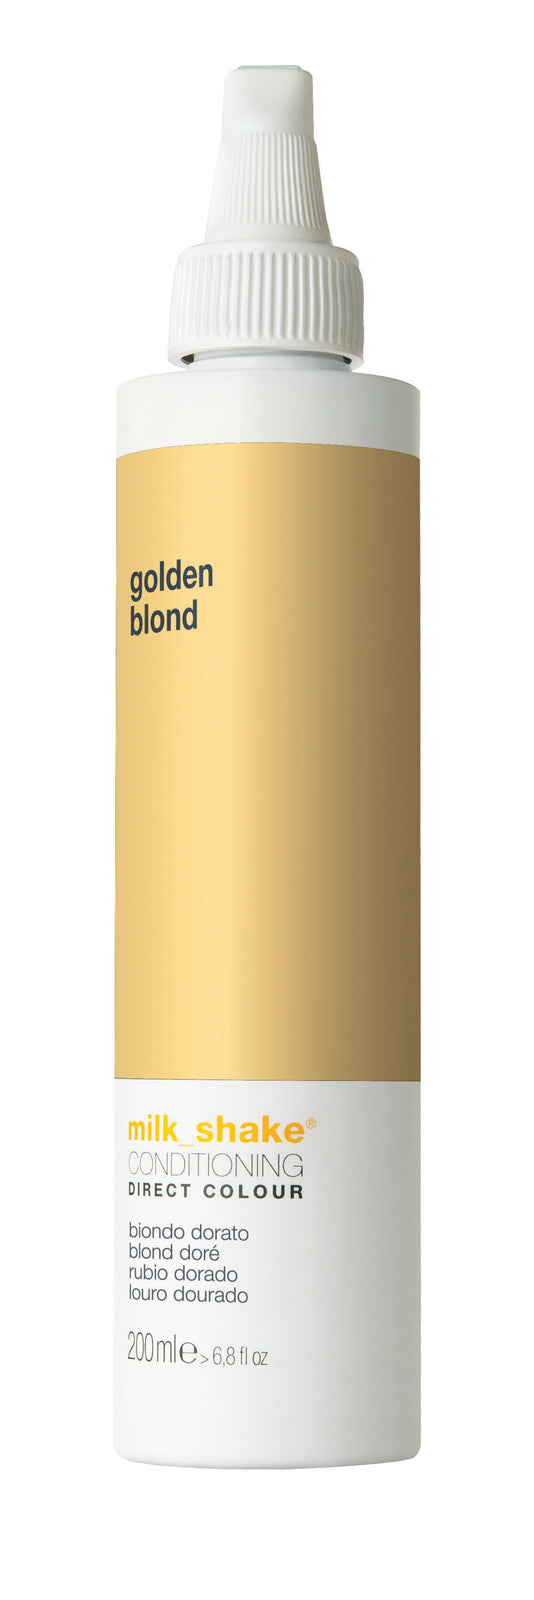 Milkshake direct color golden blond 200ML